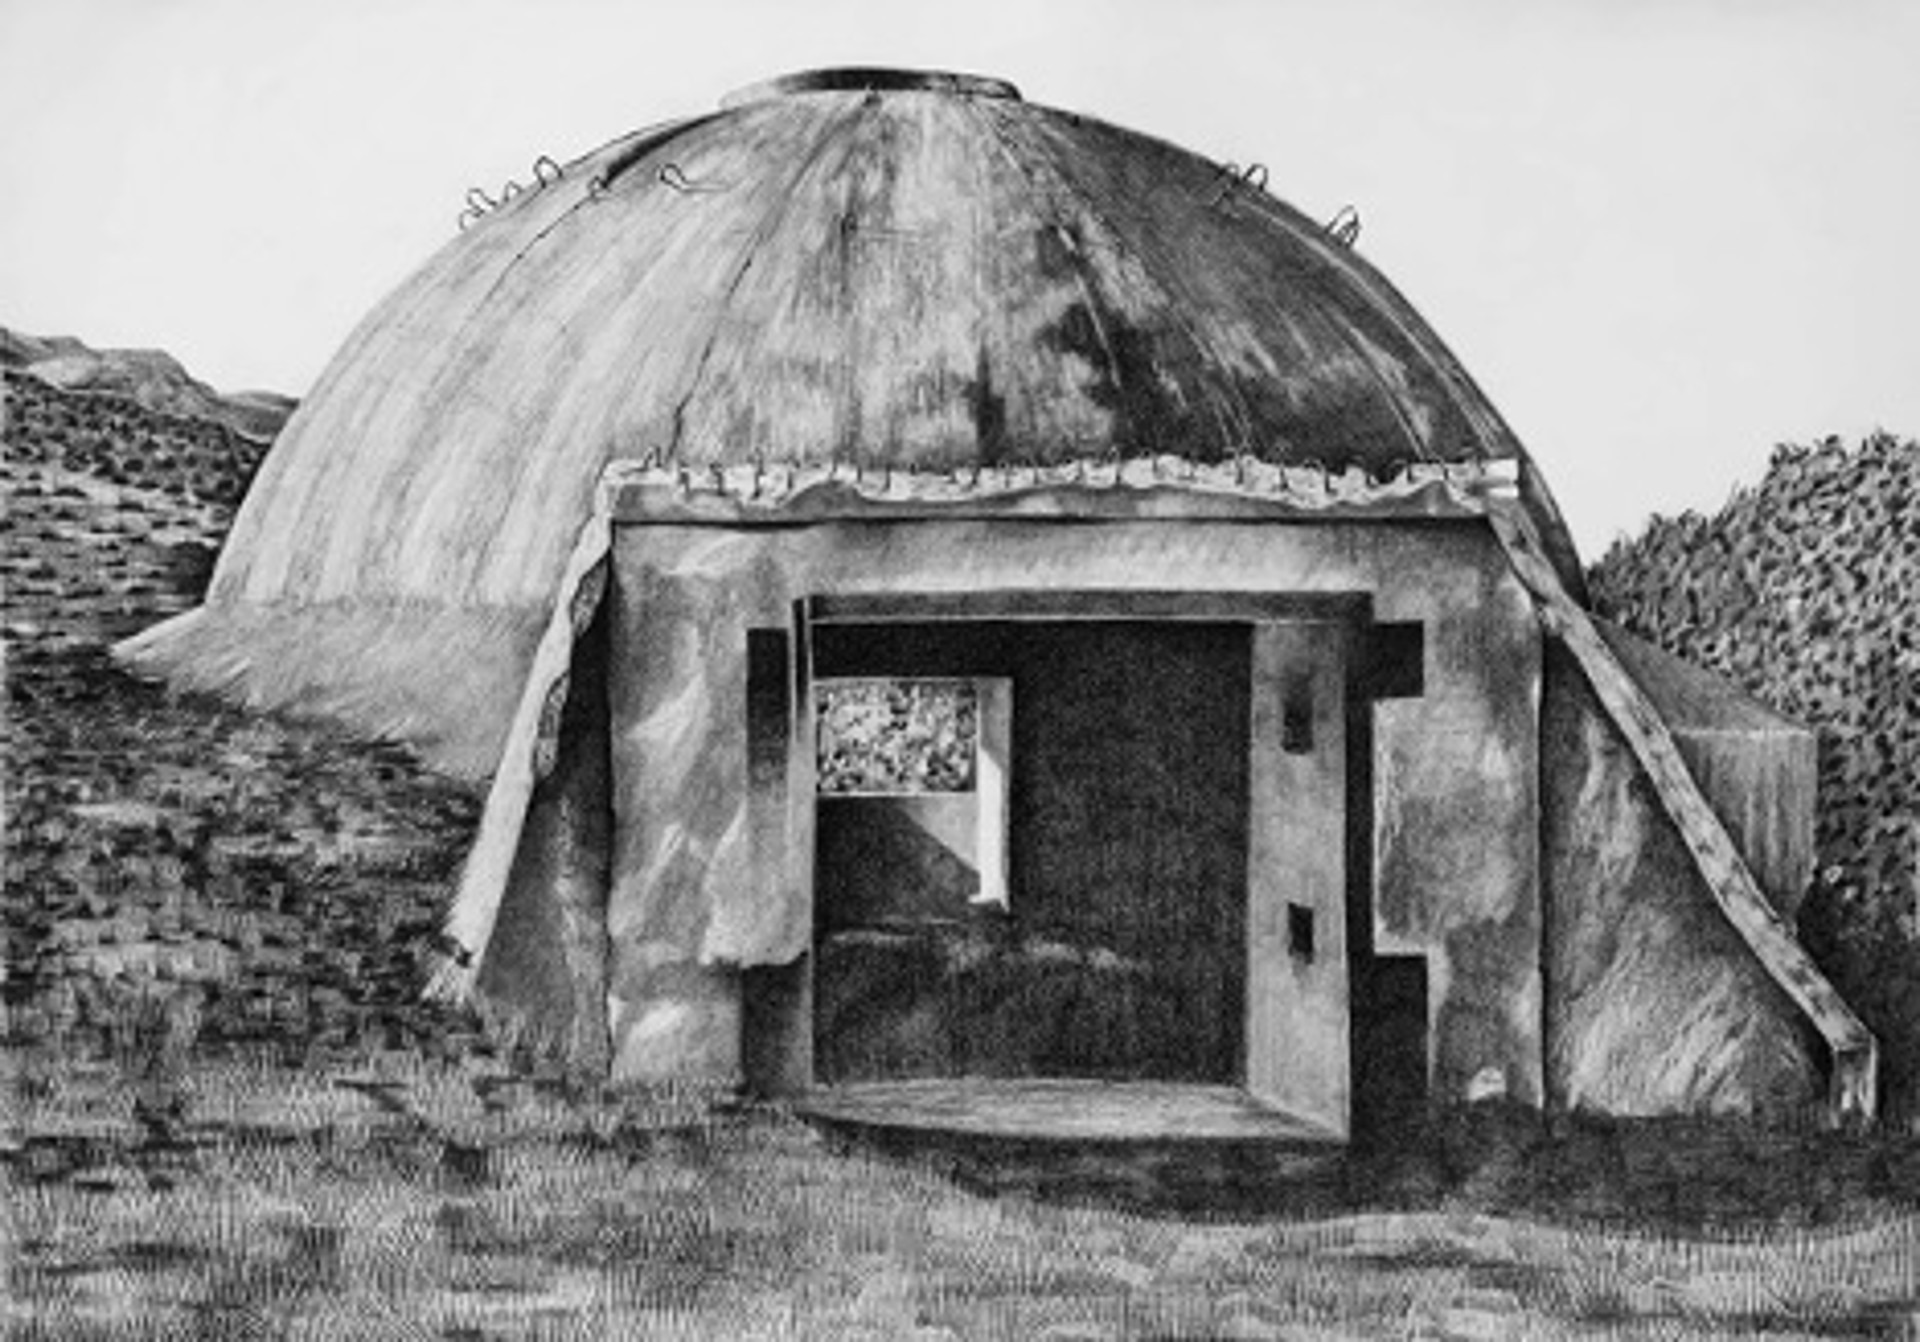 Albanian Bunker 03 by Garland Fielder